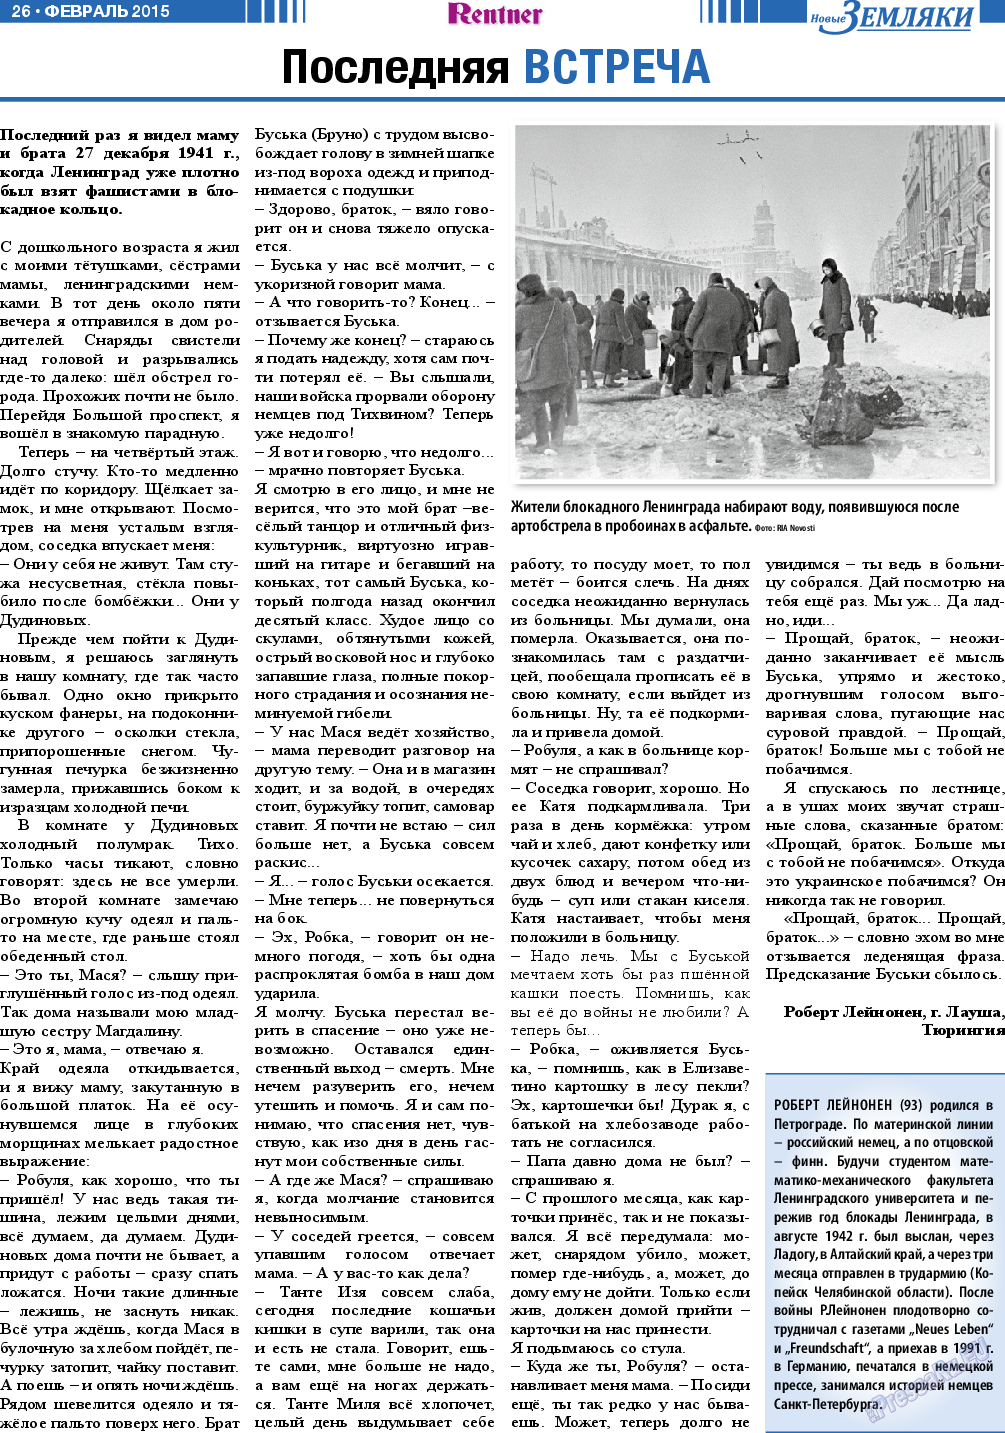 Новые Земляки (газета). 2015 год, номер 2, стр. 26